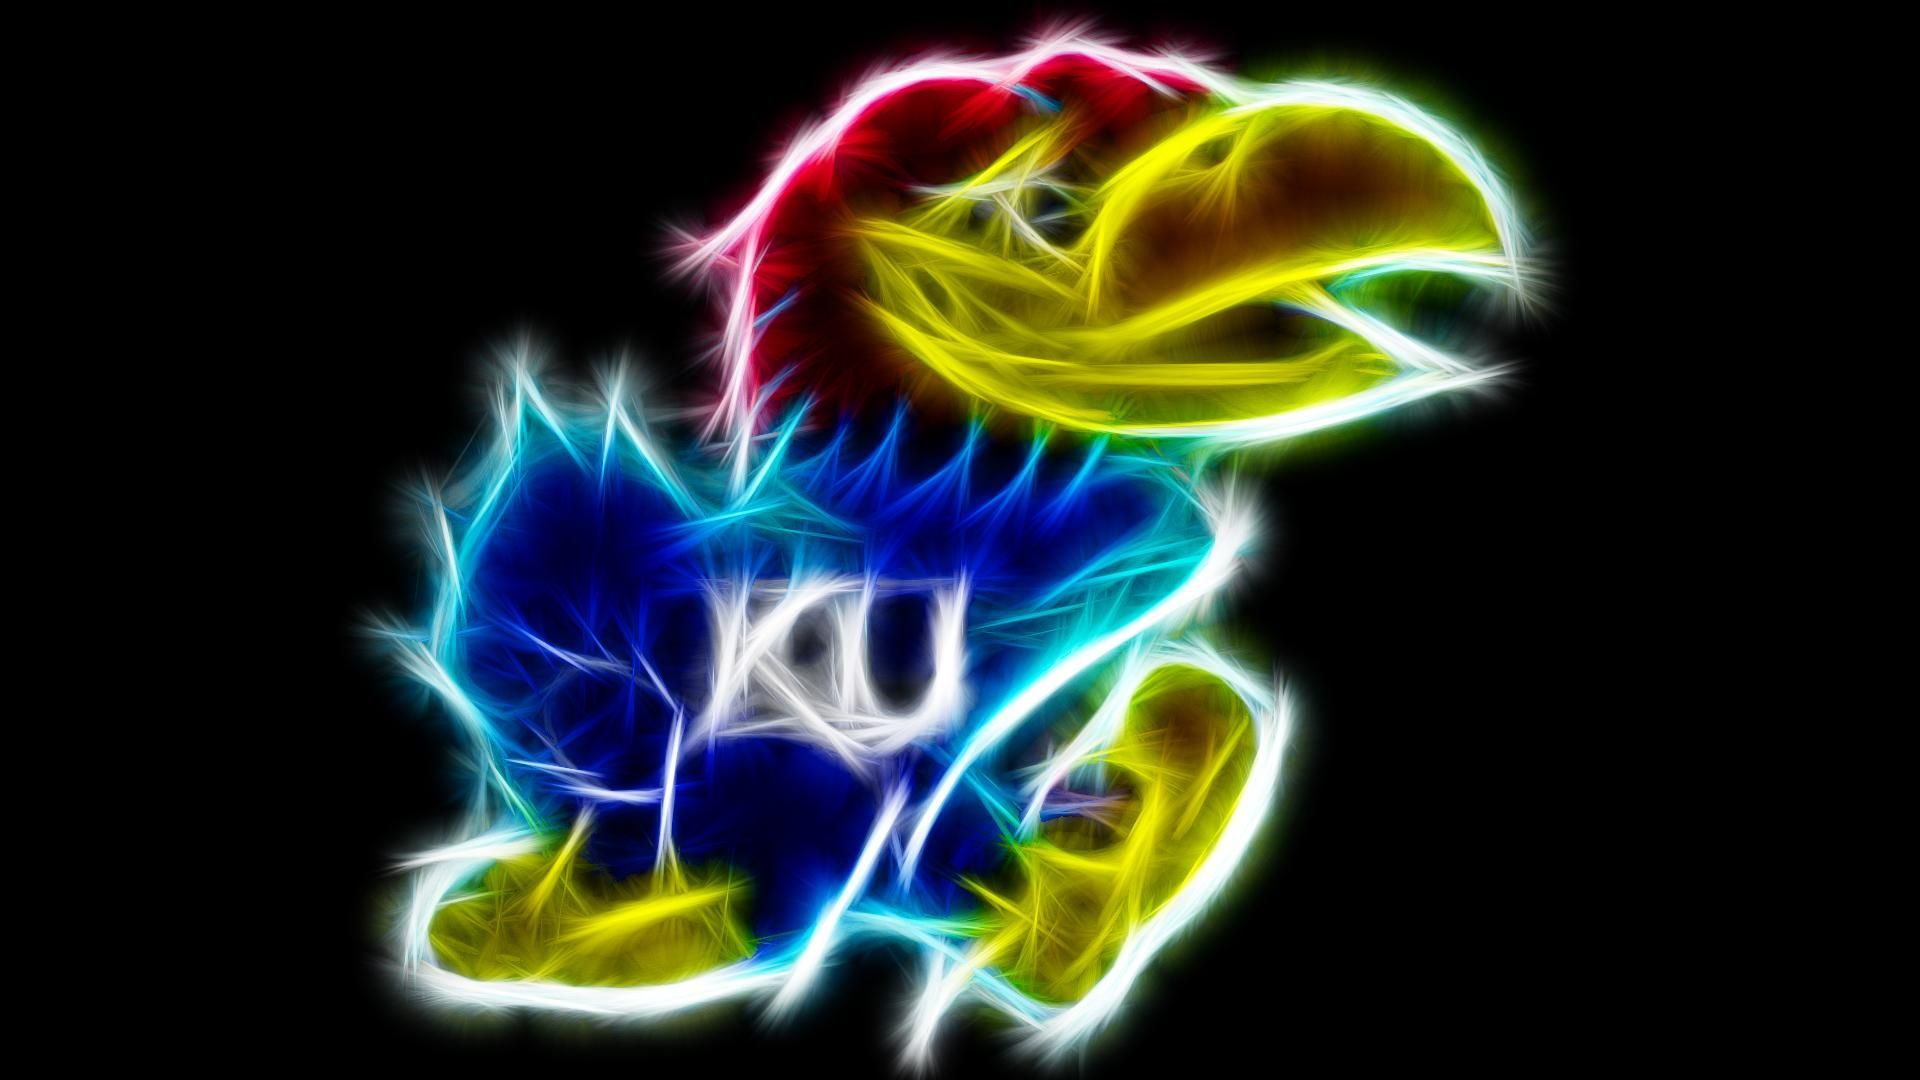 KU. Kansas jayhawks